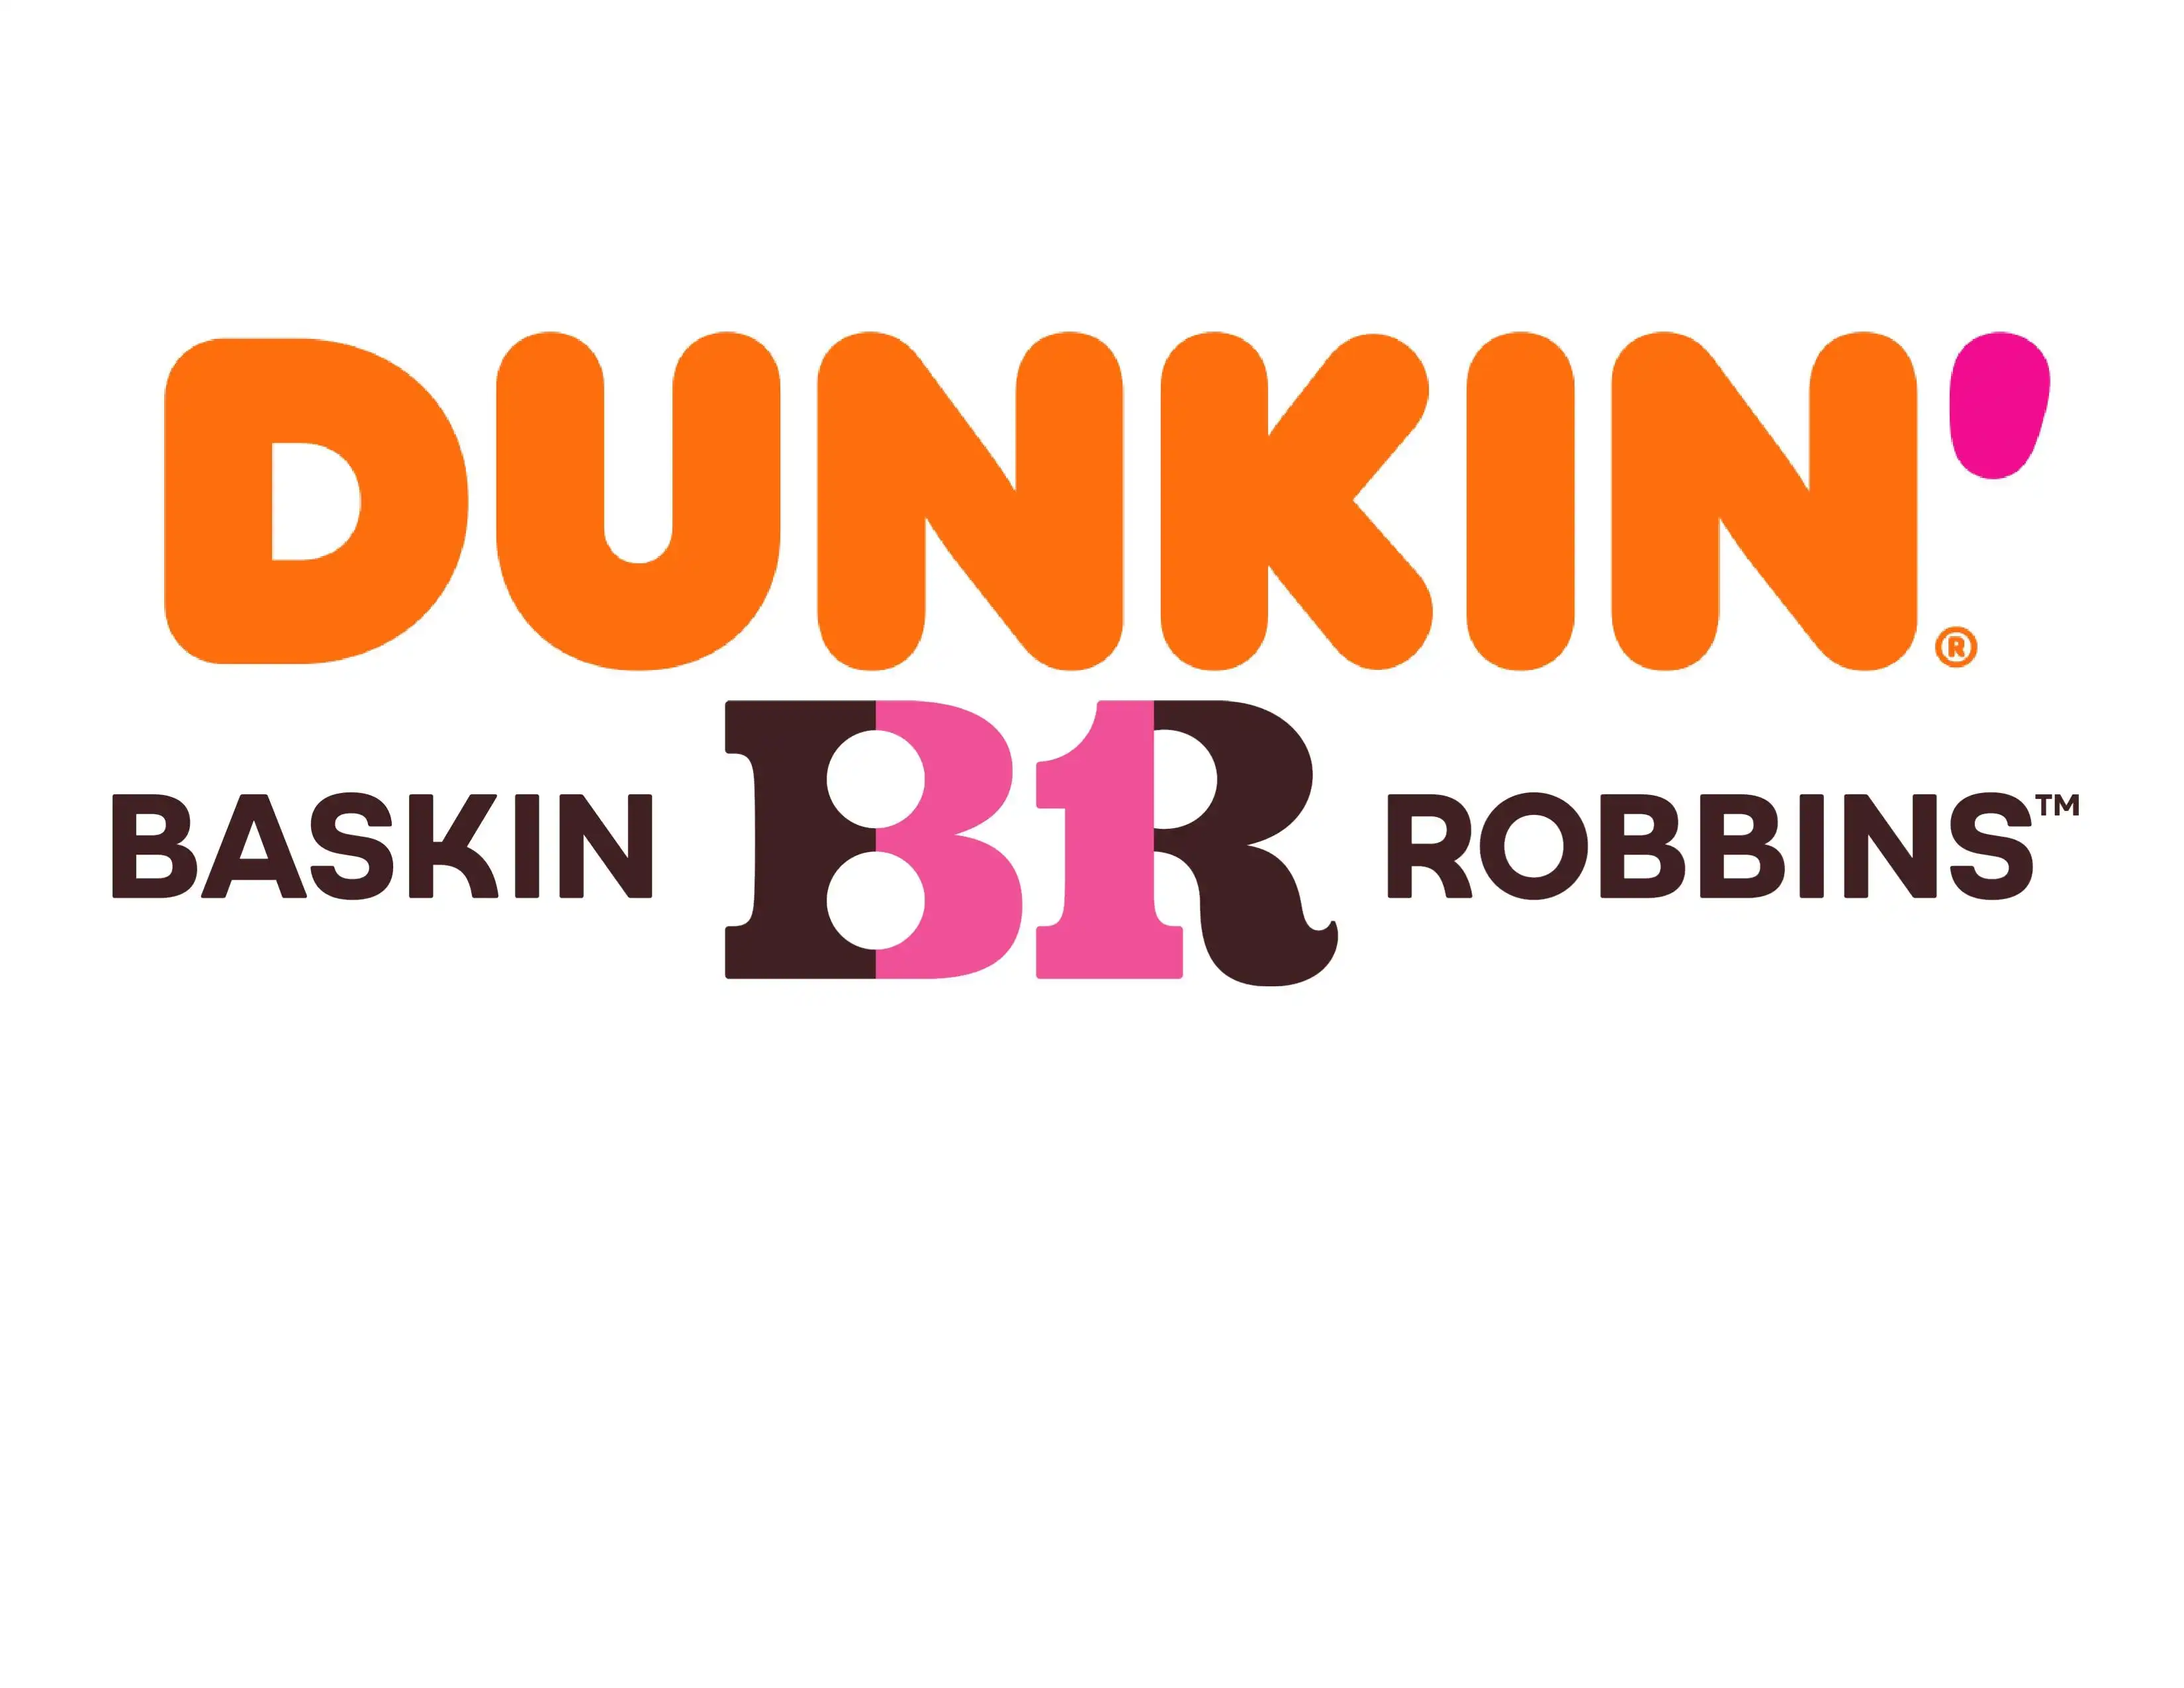 Dunkin Donuts and Baskin Robbins